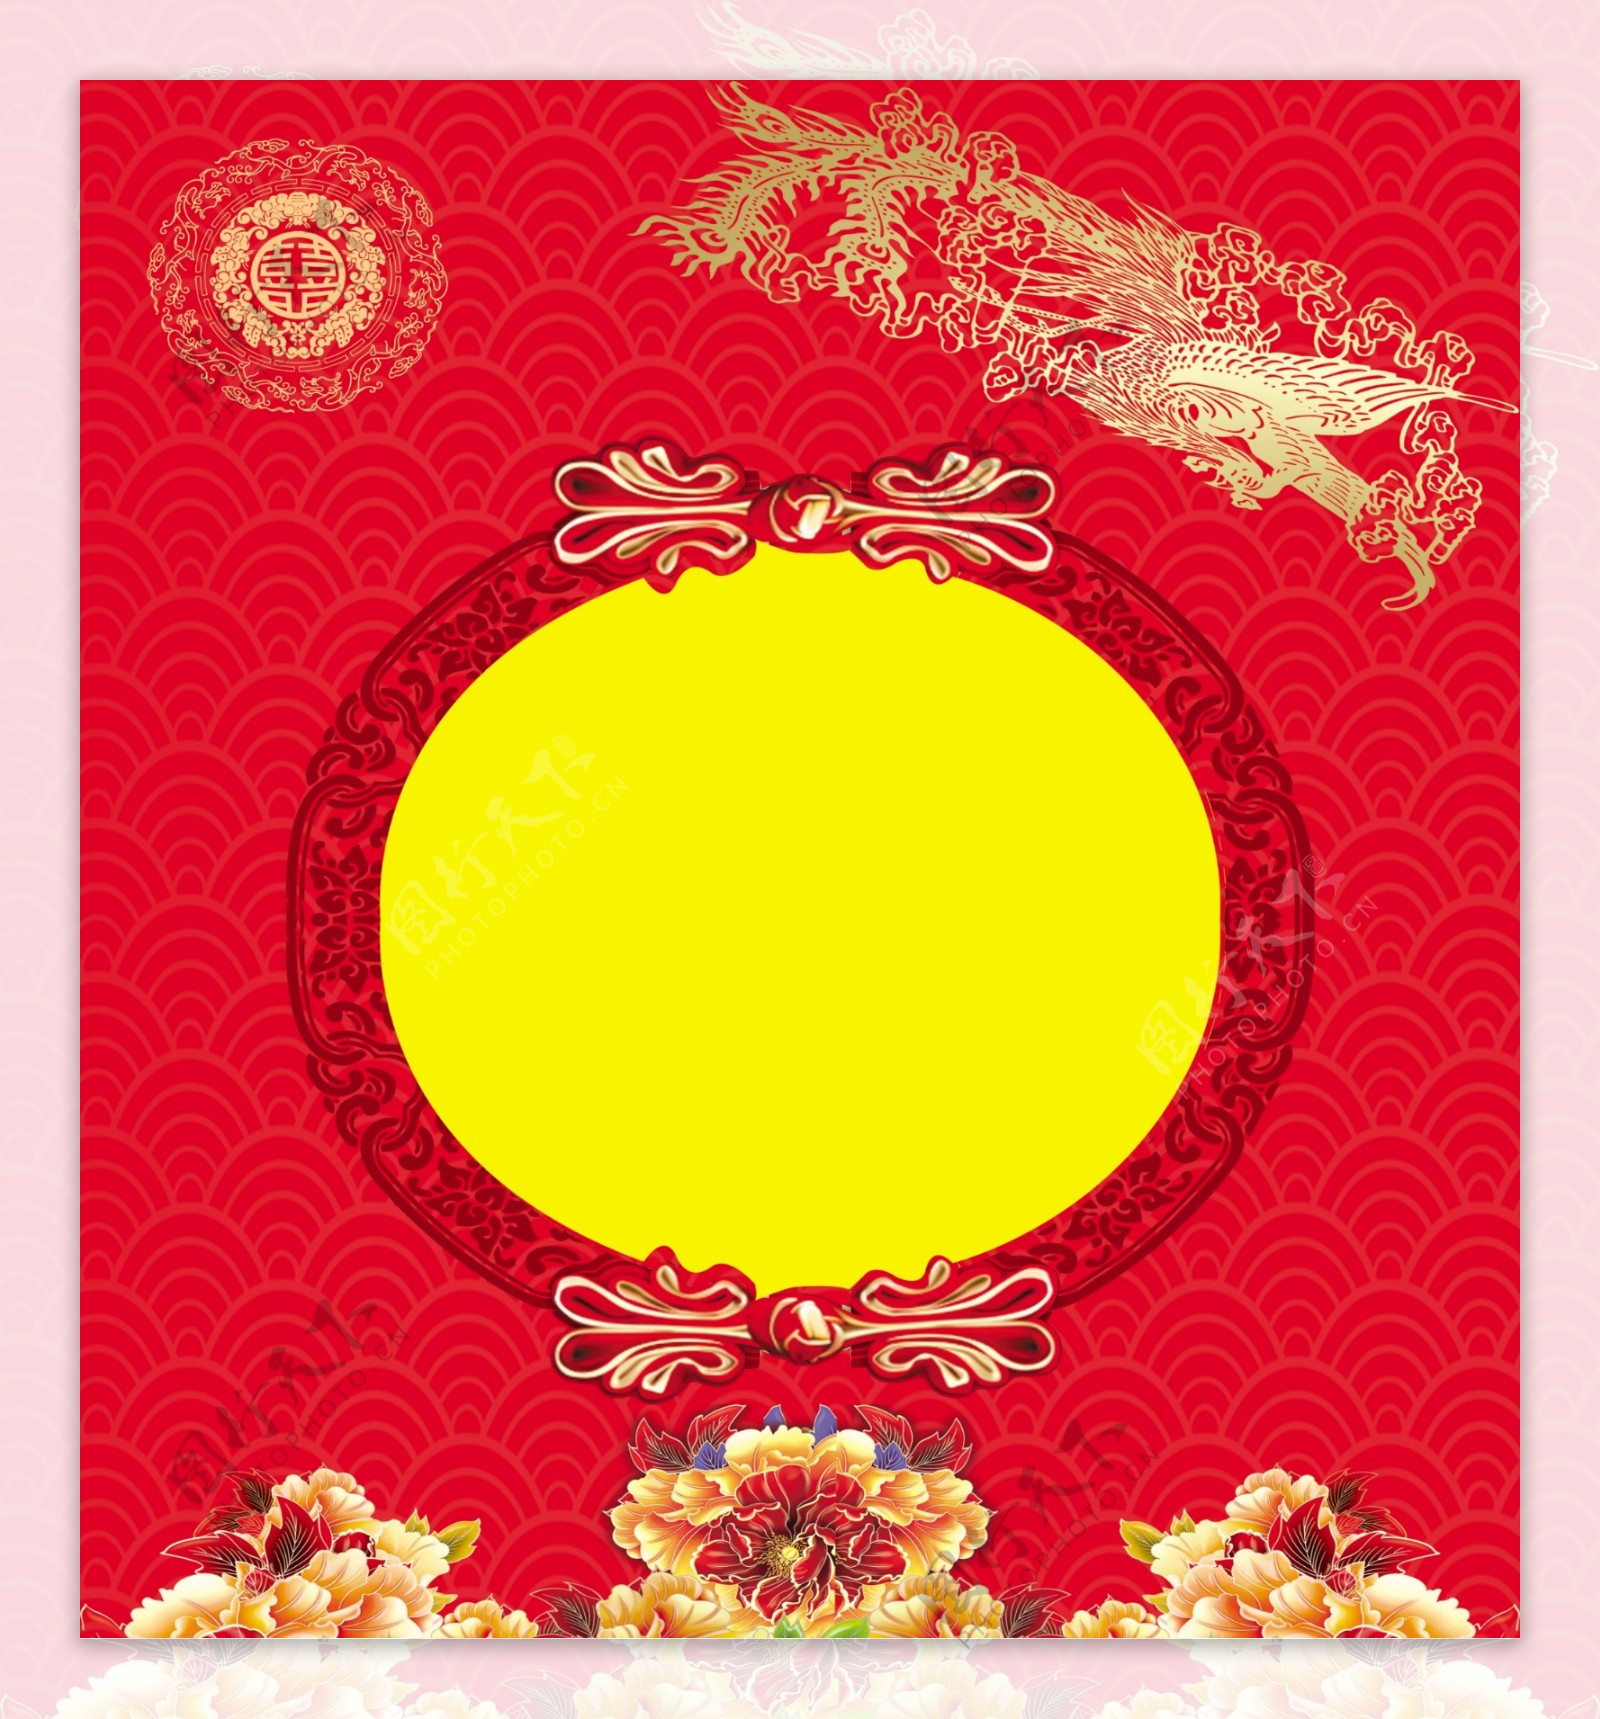 中式婚礼背景红色背景图片